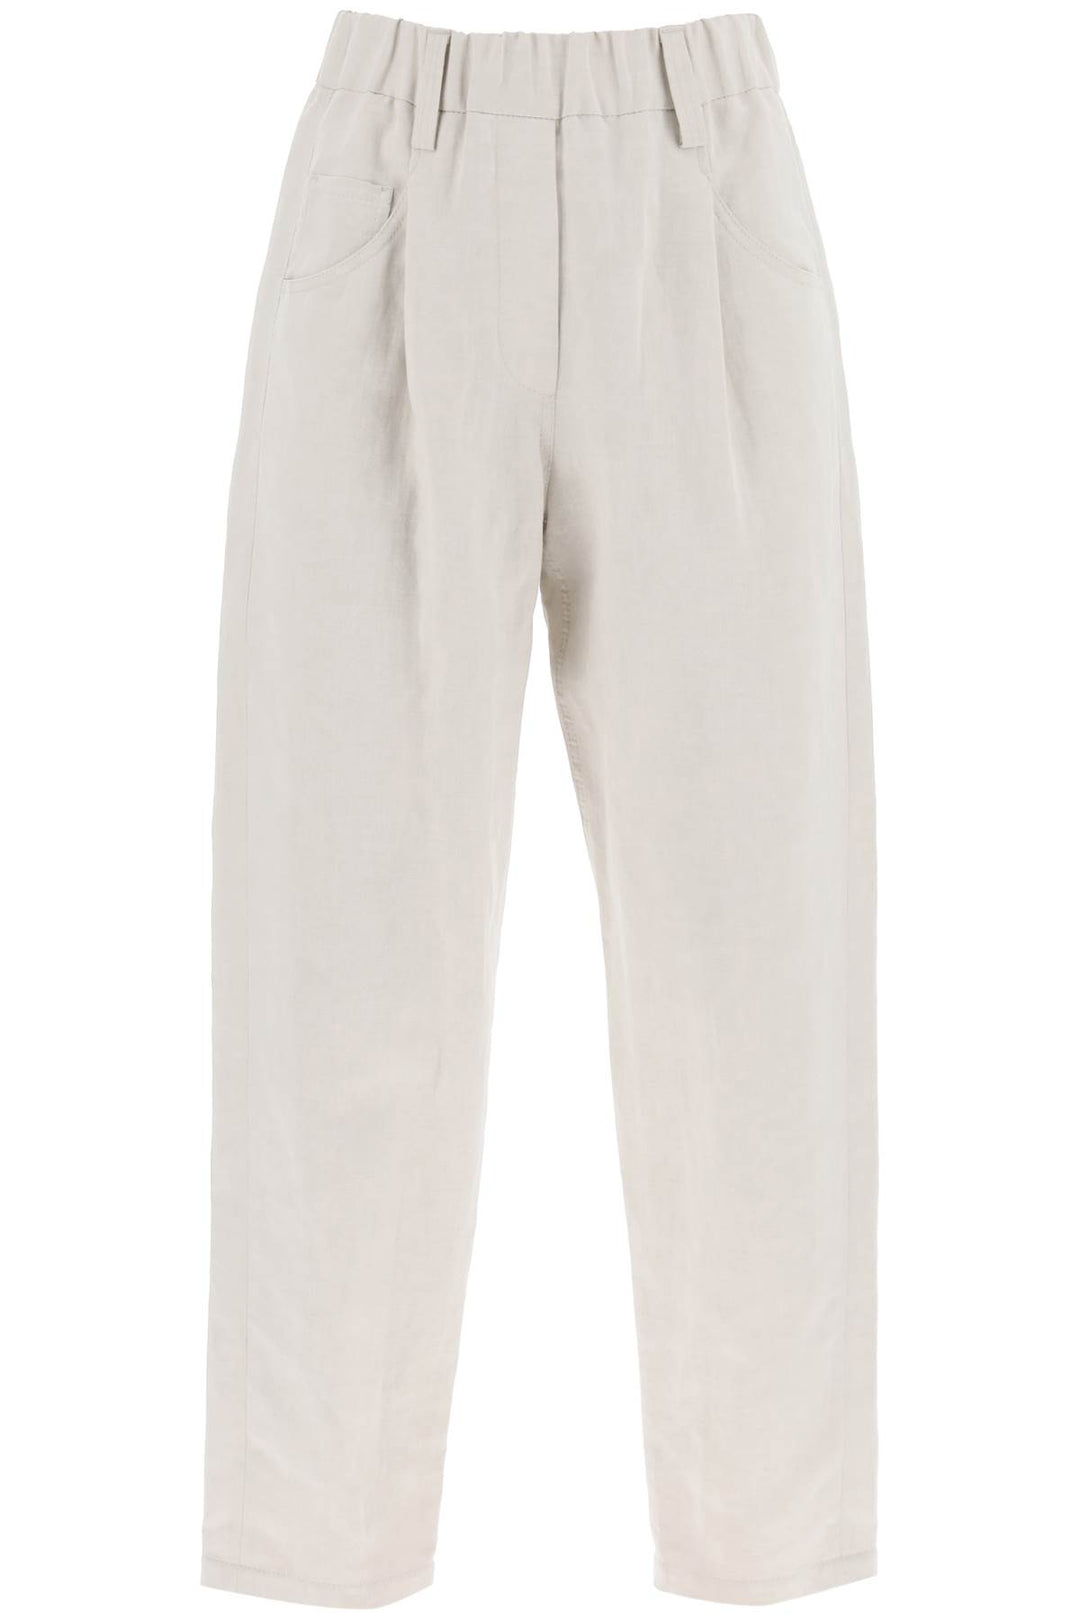 linen and cotton canvas pants.-0